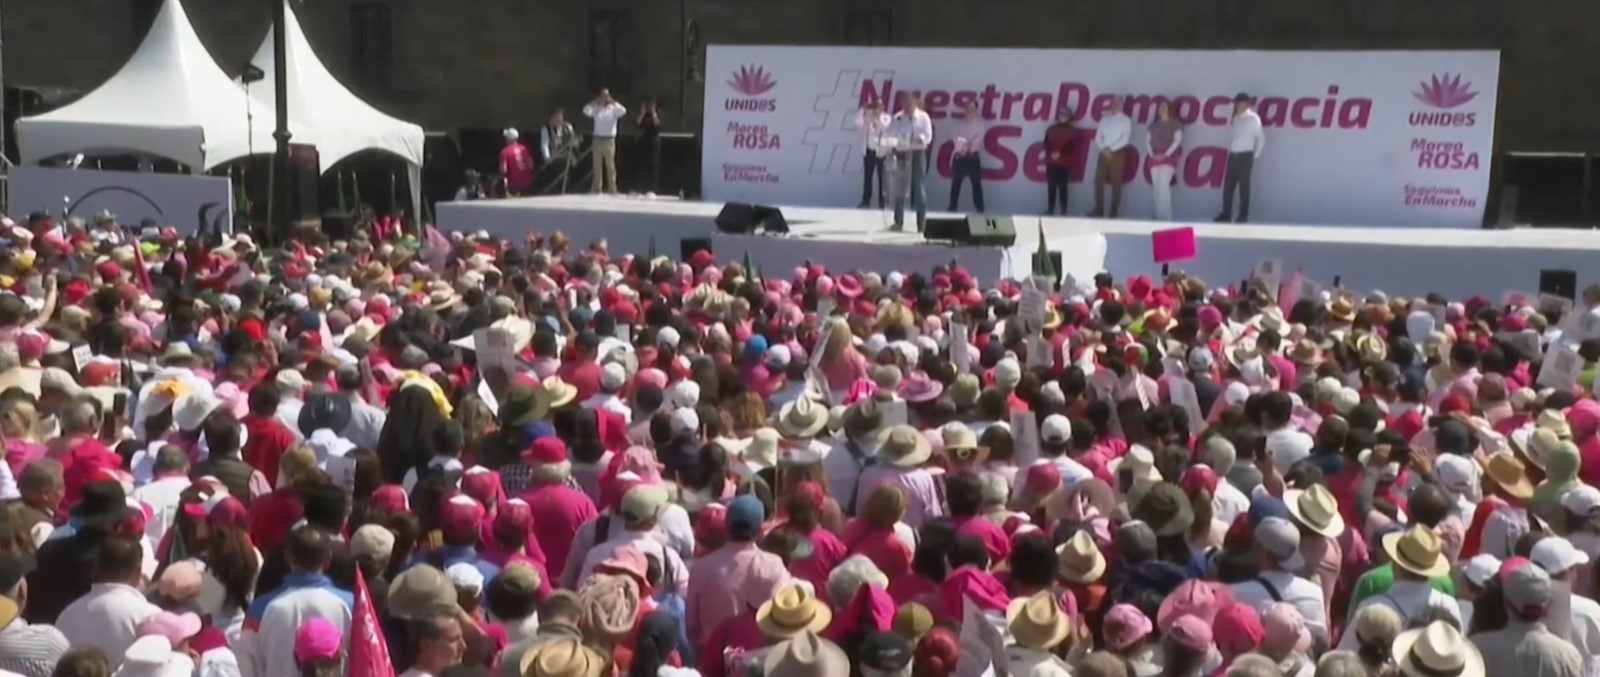 Хиляди излязоха на протест срещу президента и управляващата партия в Мексико по